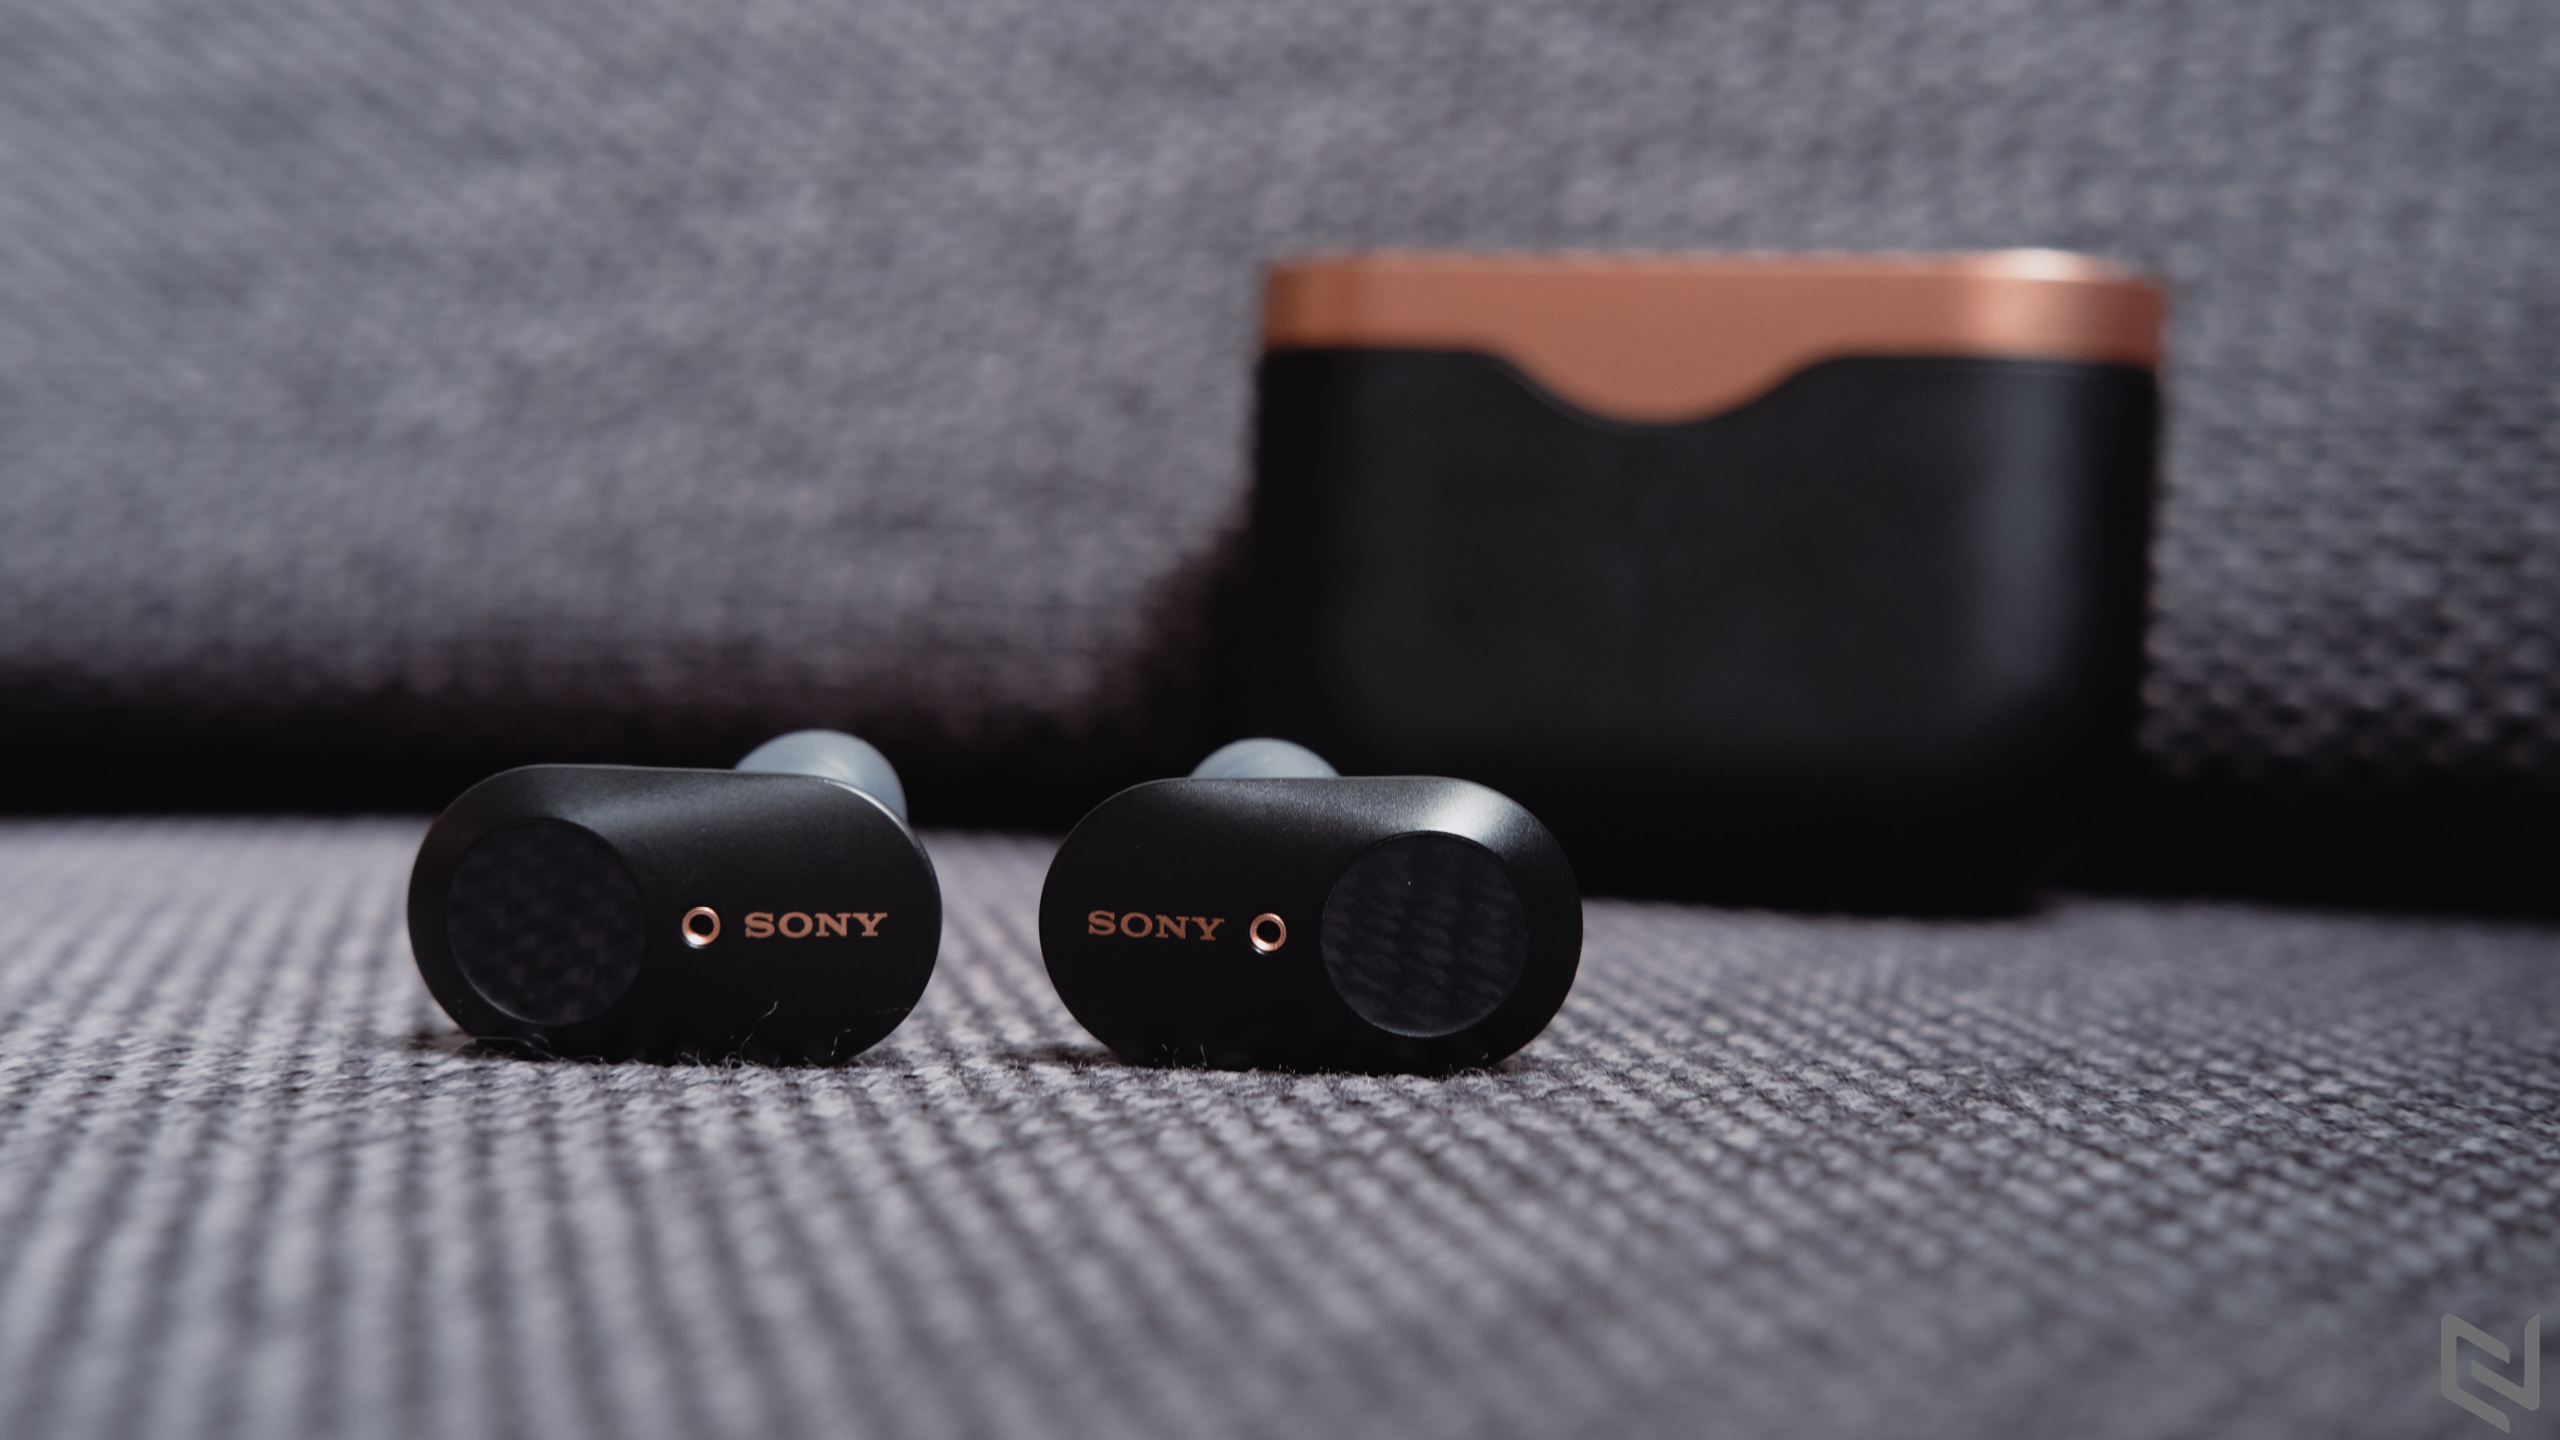 Mở hộp và đánh giá nhanh tai nghe Sony WF-1000MX3: Hoàn thiện cao cấp, chống ồn tốt, chất âm tự nhiên